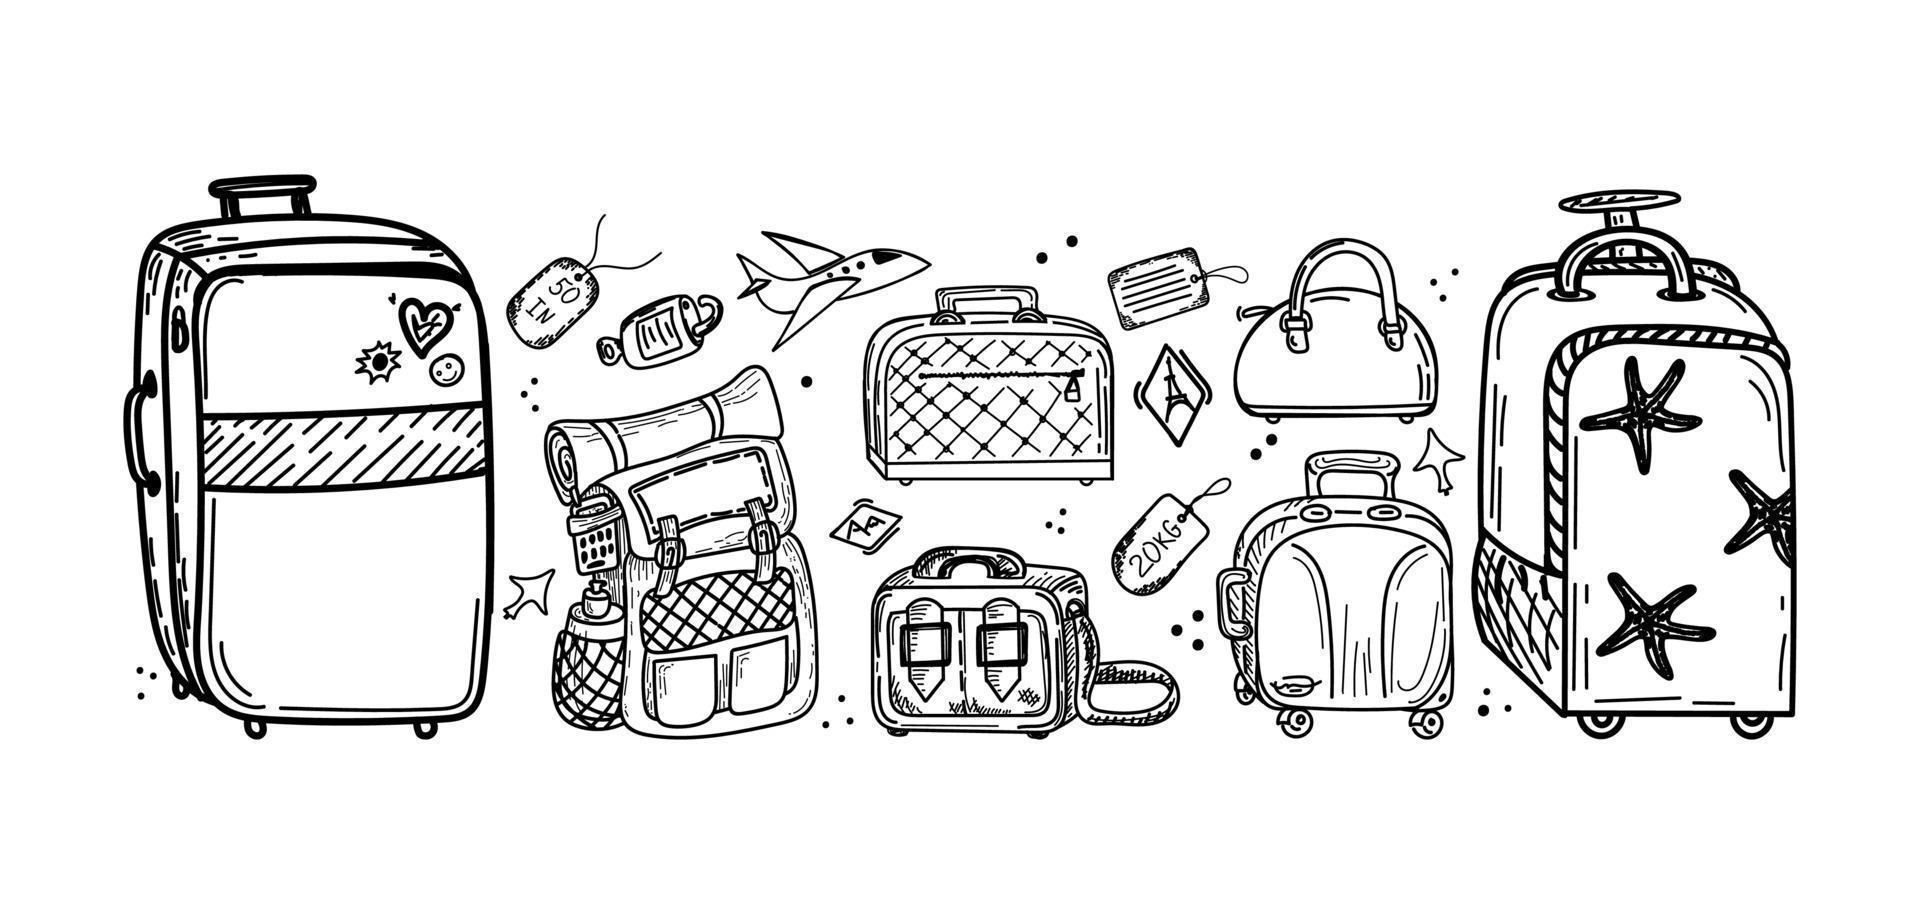 ensemble de différents types de bagages, doodle dessiné à la main dans le style de croquis. illustration vectorielle. grande et petite valise, petit sac, bagage à main, valise, étiquettes. accessoires. avion. esquisser vecteur